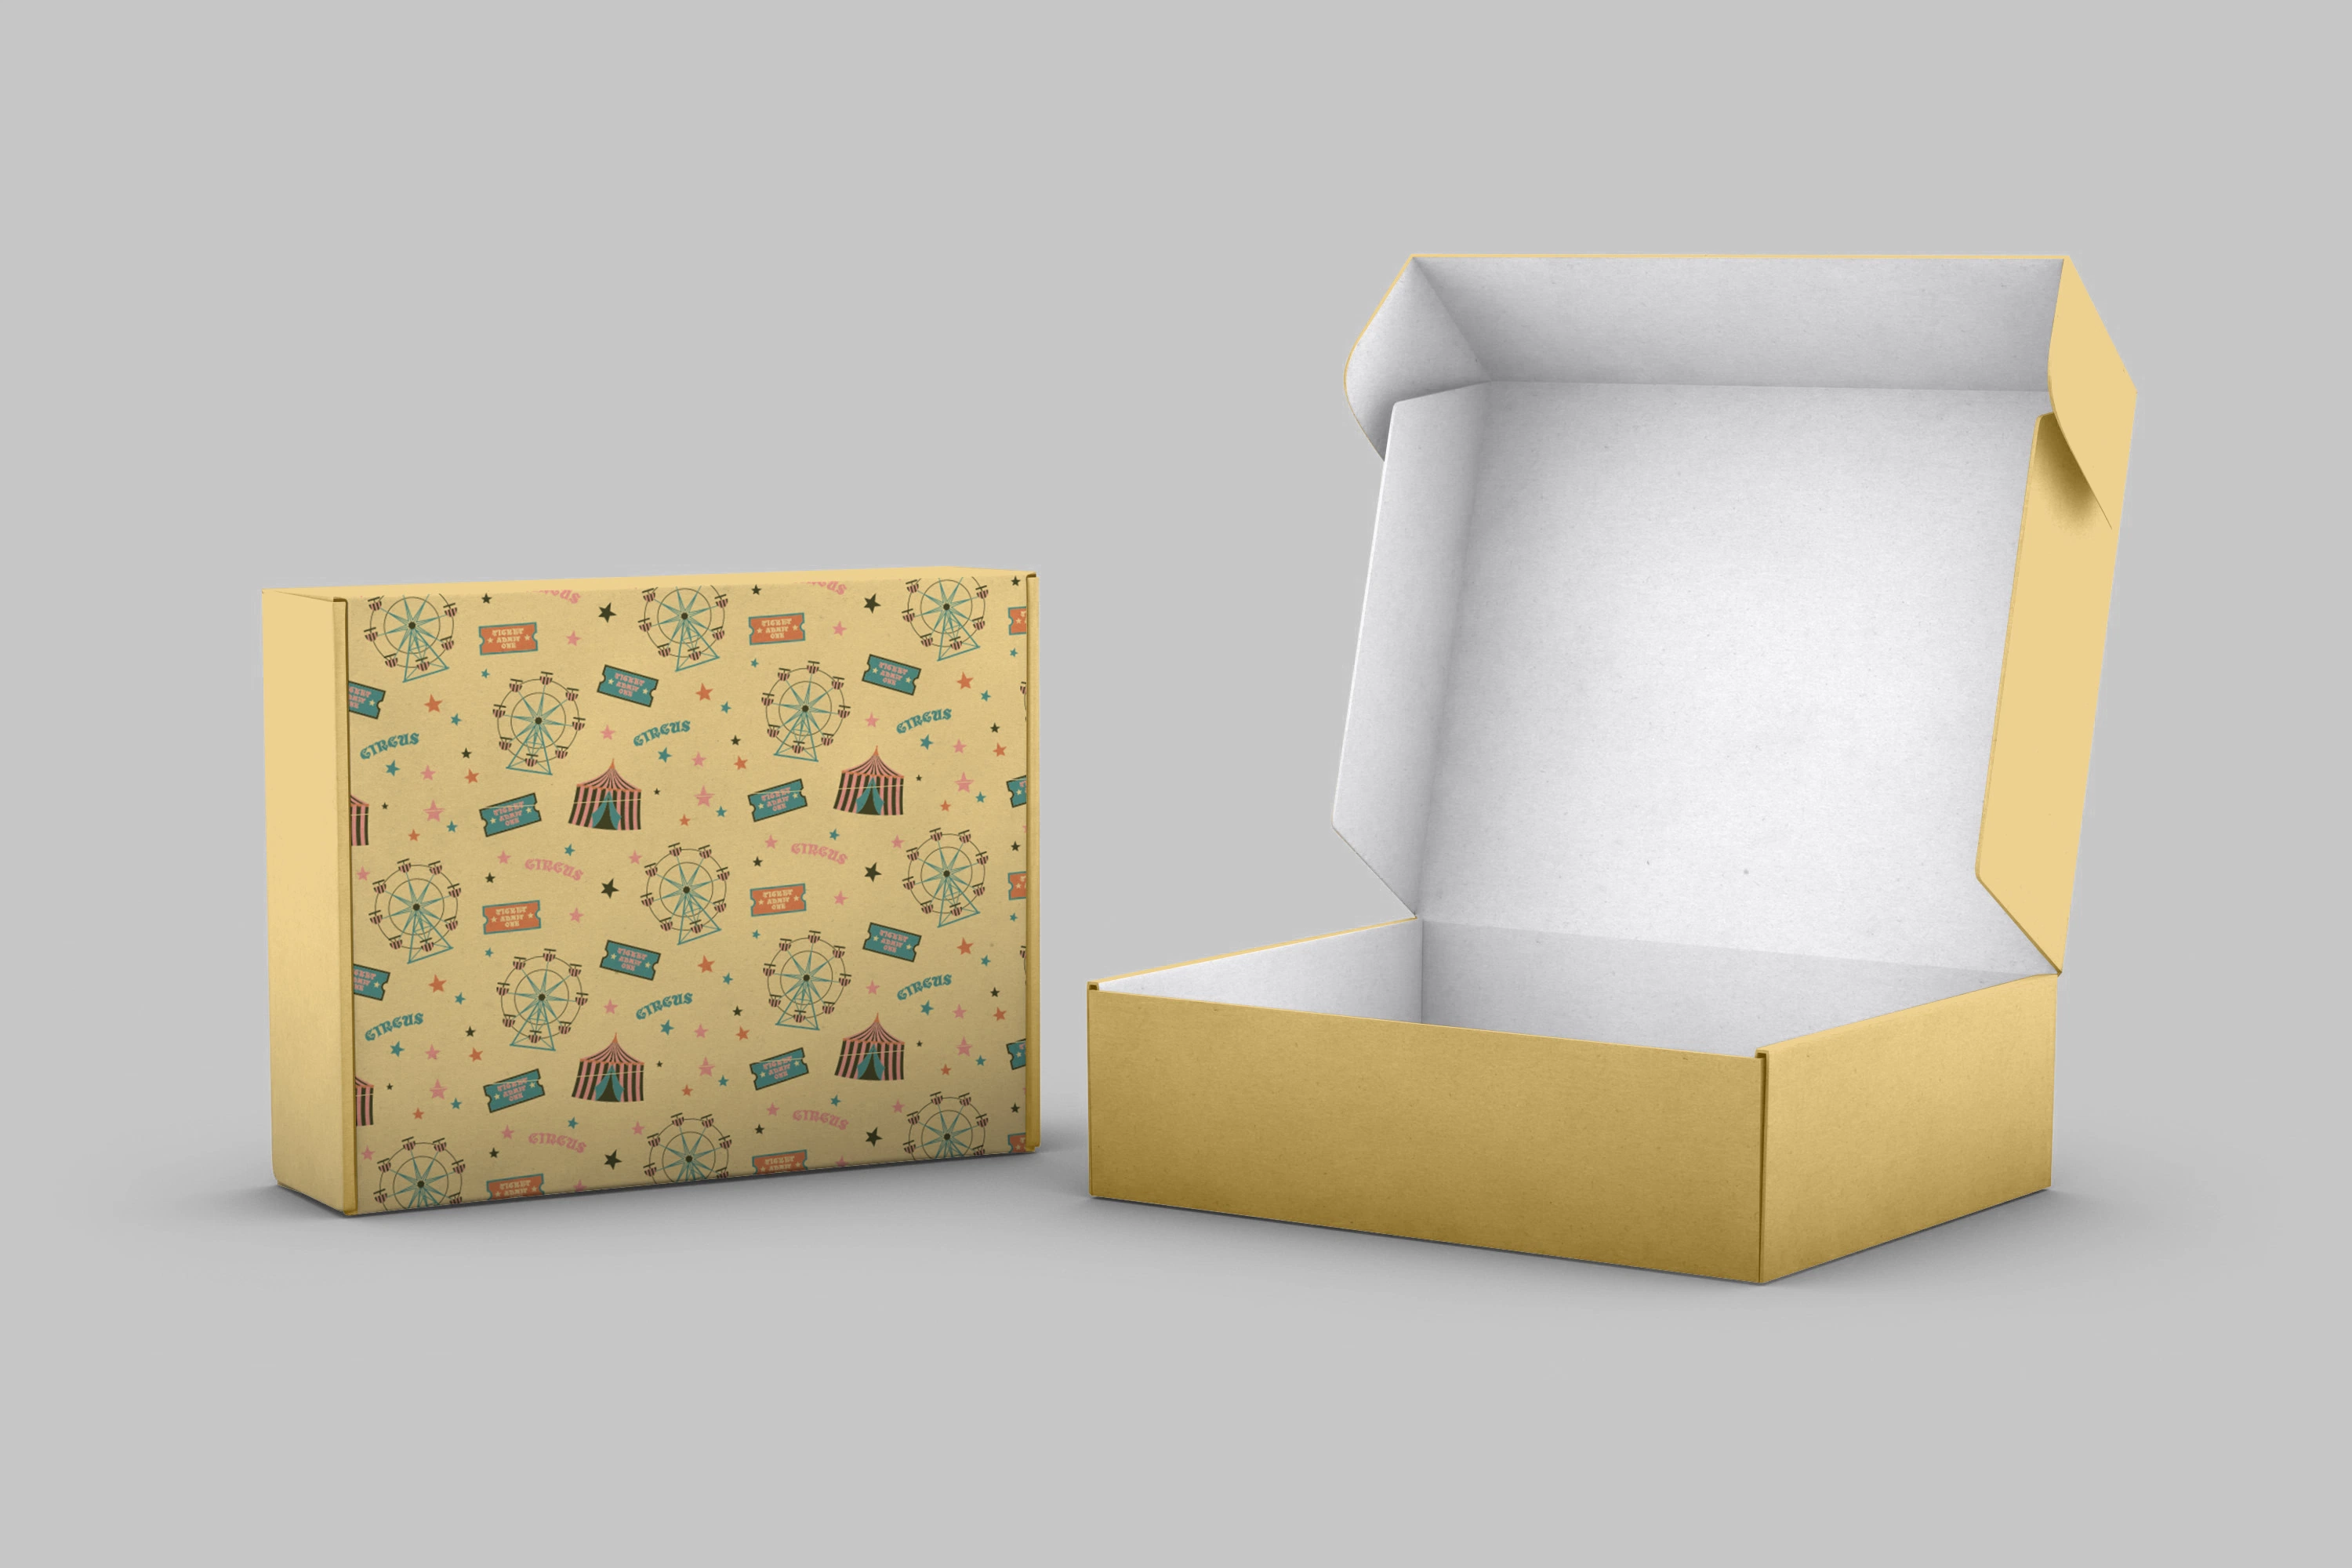 Impression de quatre couleurs boîte d'emballage personnalisée boîte d'expédition boîte postale Carton carton carton carton carton carton carton carton carton carton carton papier de luxe boîte cadeau Boîte d'emballage du prix d'usine